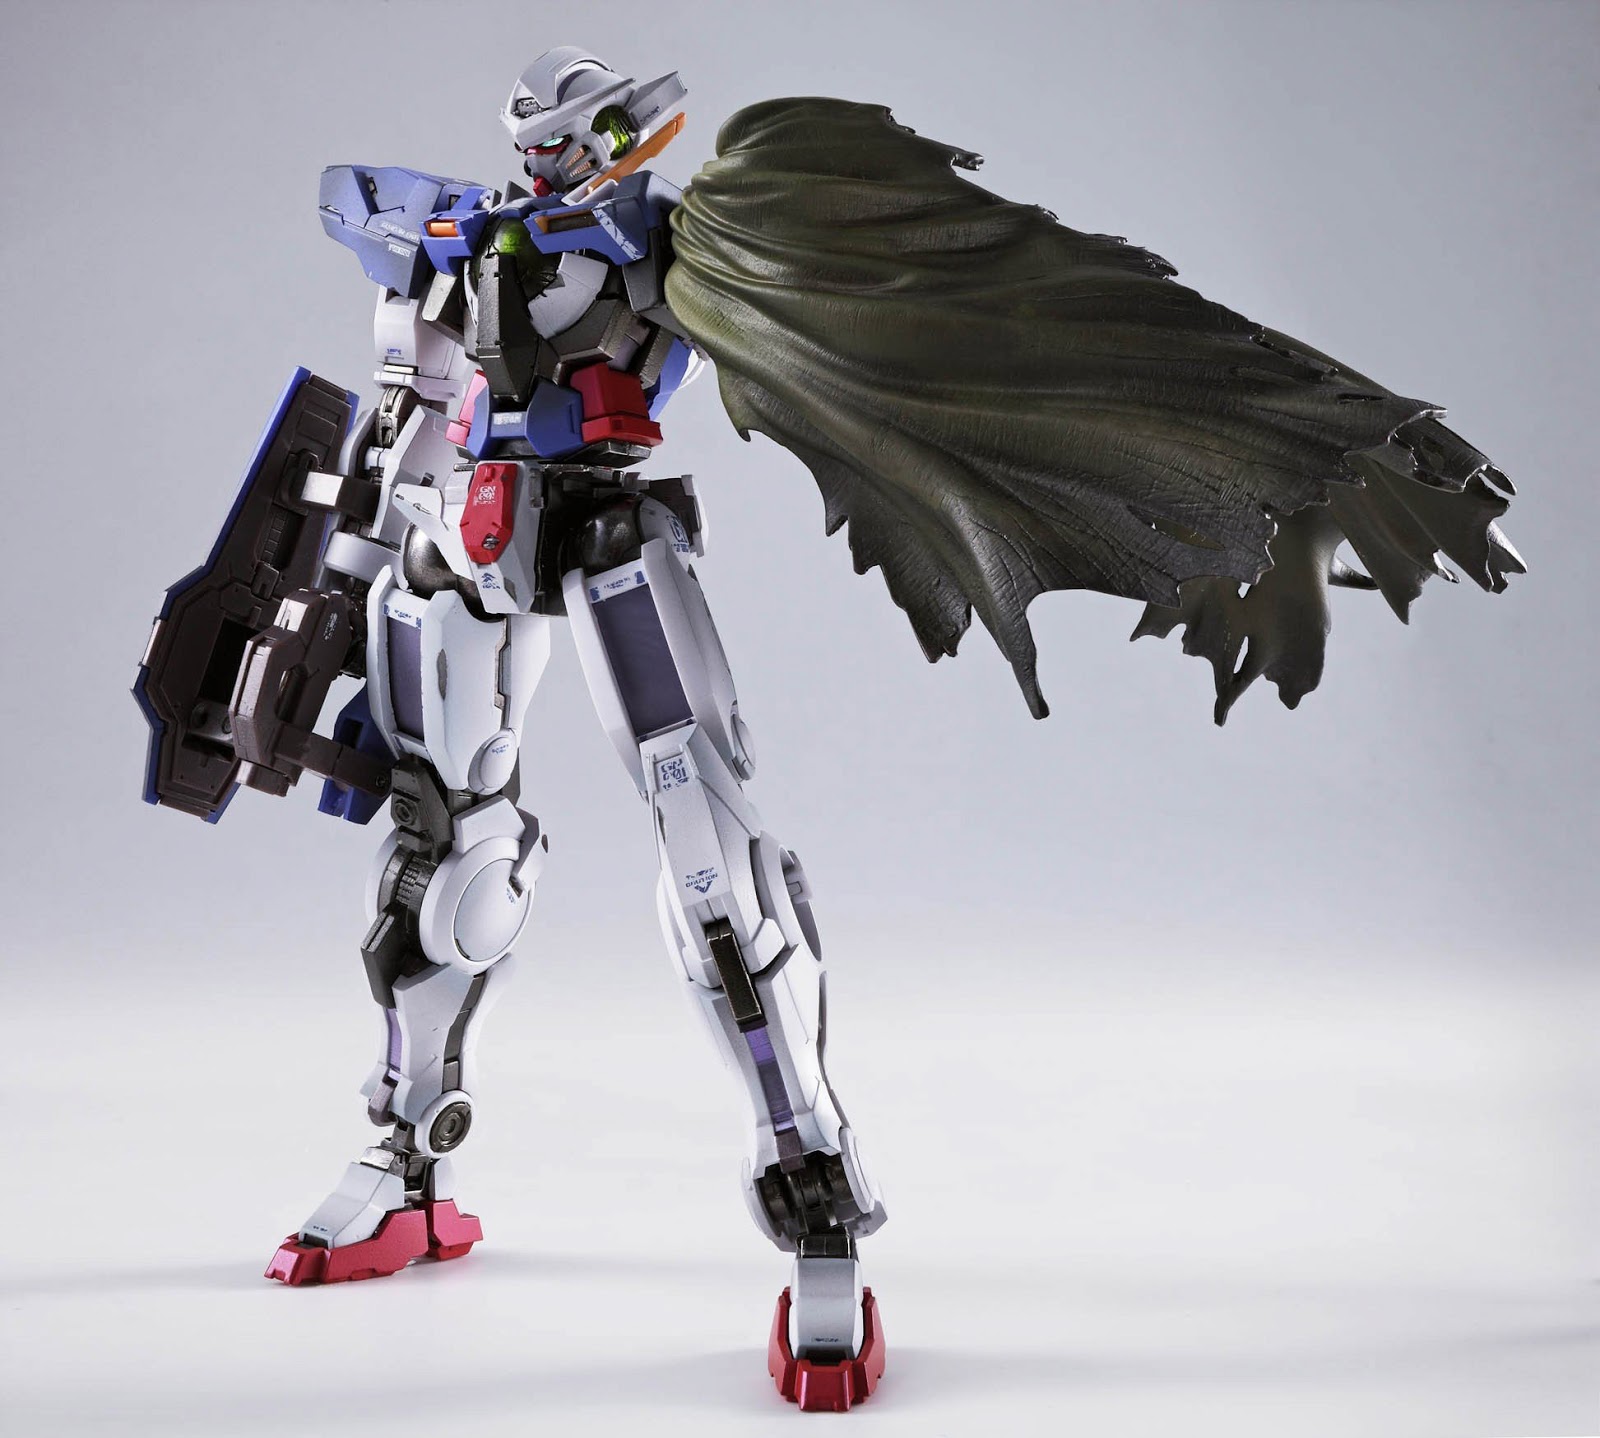 METAL BUILD 1/100 Gundam Exia Repair I & II- New Image Updated 9/11/201...